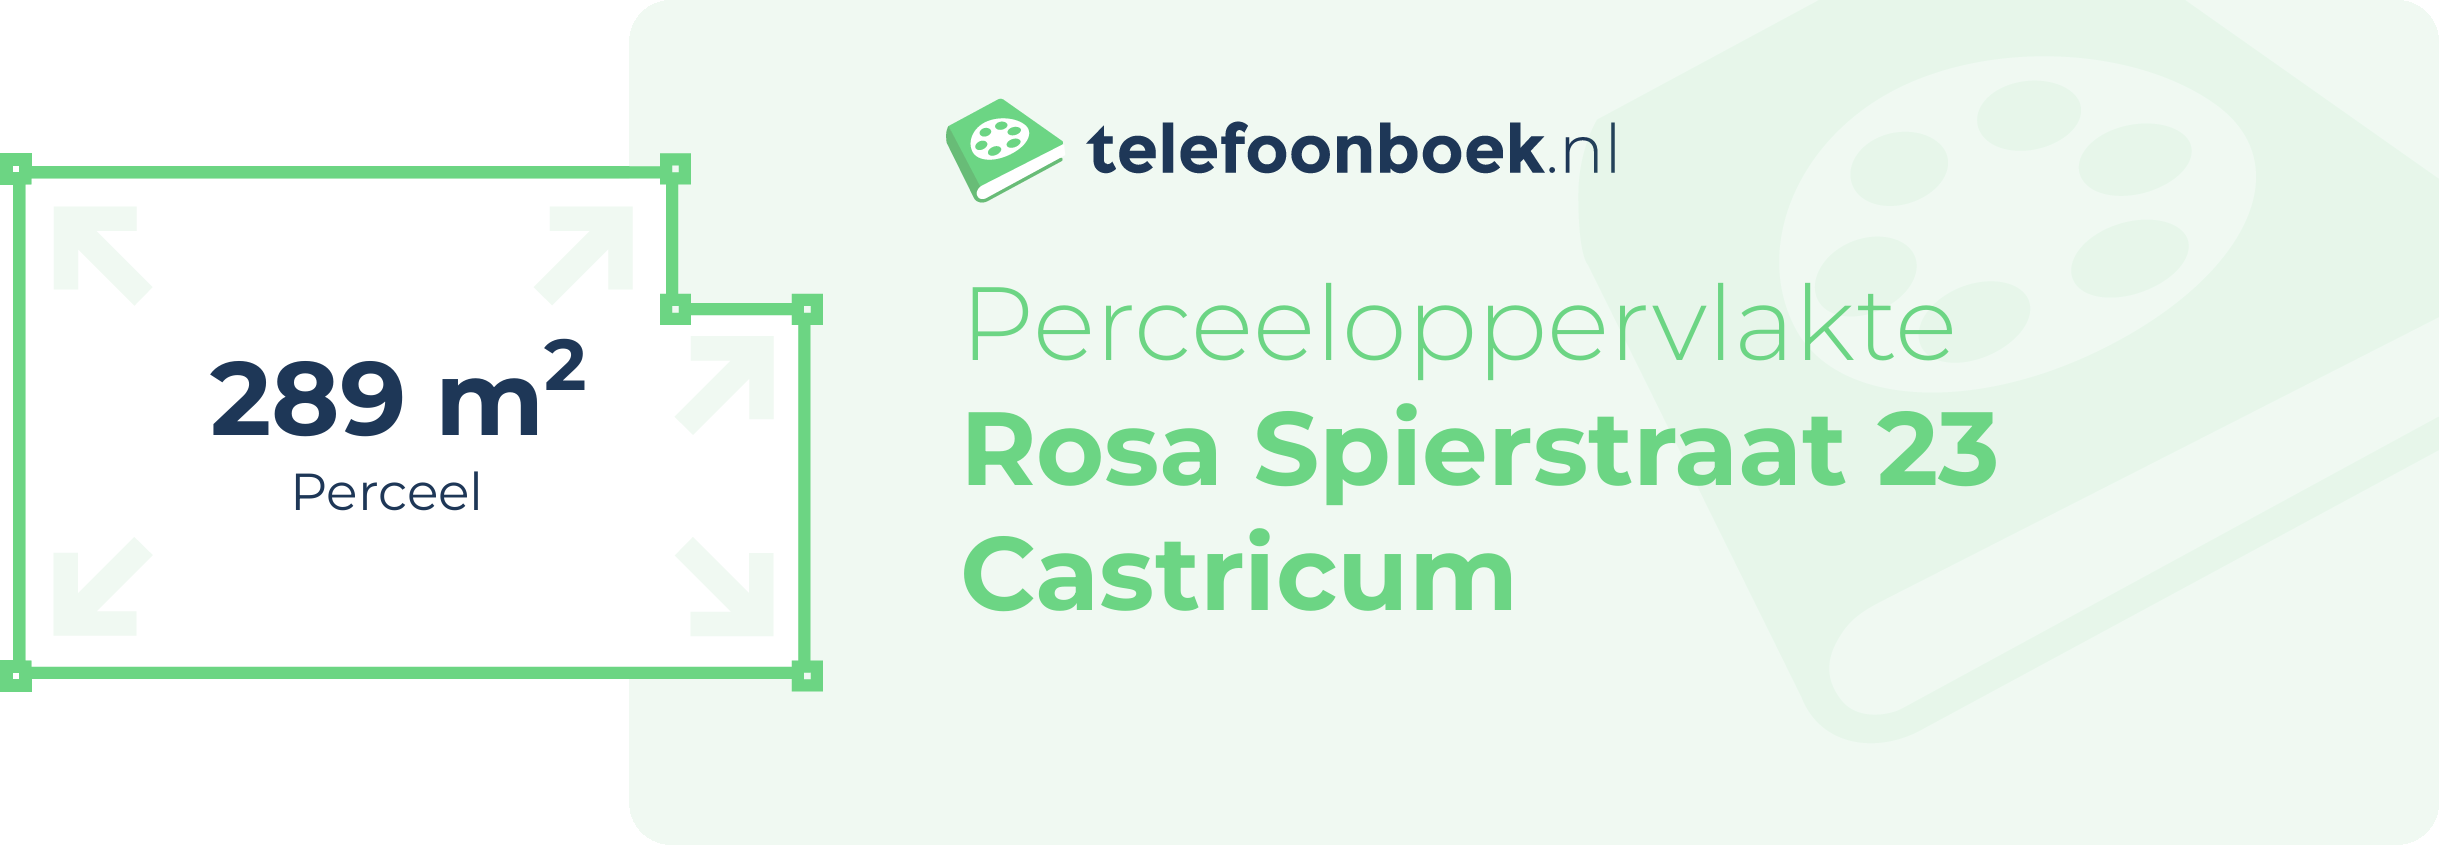 Perceeloppervlakte Rosa Spierstraat 23 Castricum